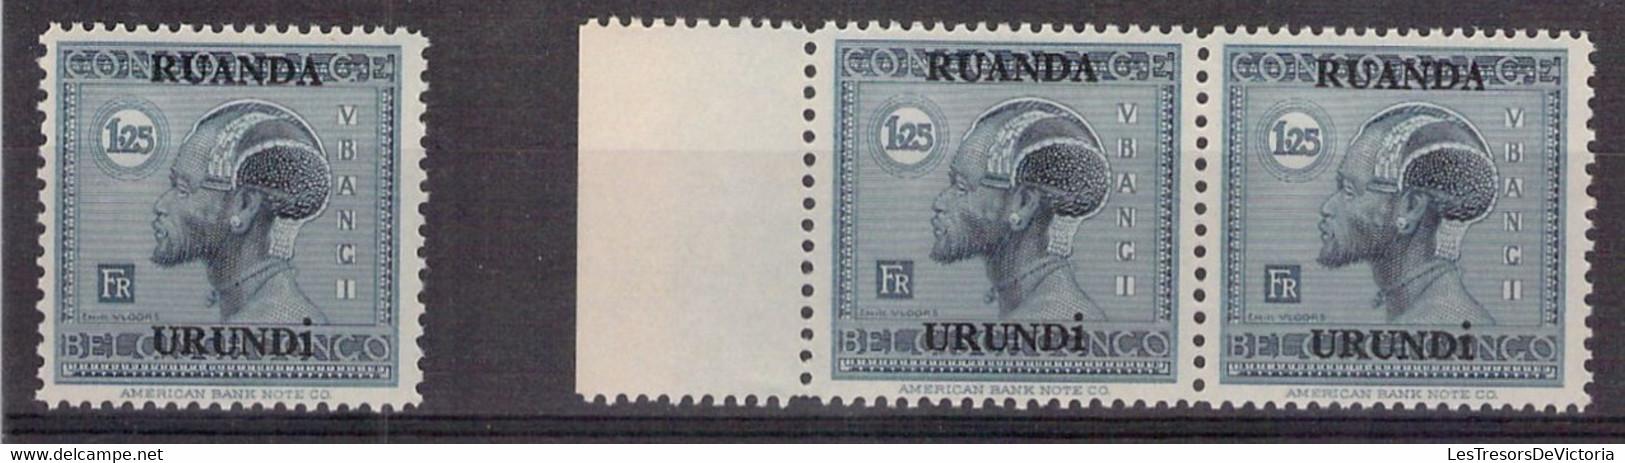 Ruanda Urundi - Lot De 11 COB 73 **MNH 1.25 Bleu Pale - 1925 - Cote 33 COB 2022 - Ongebruikt